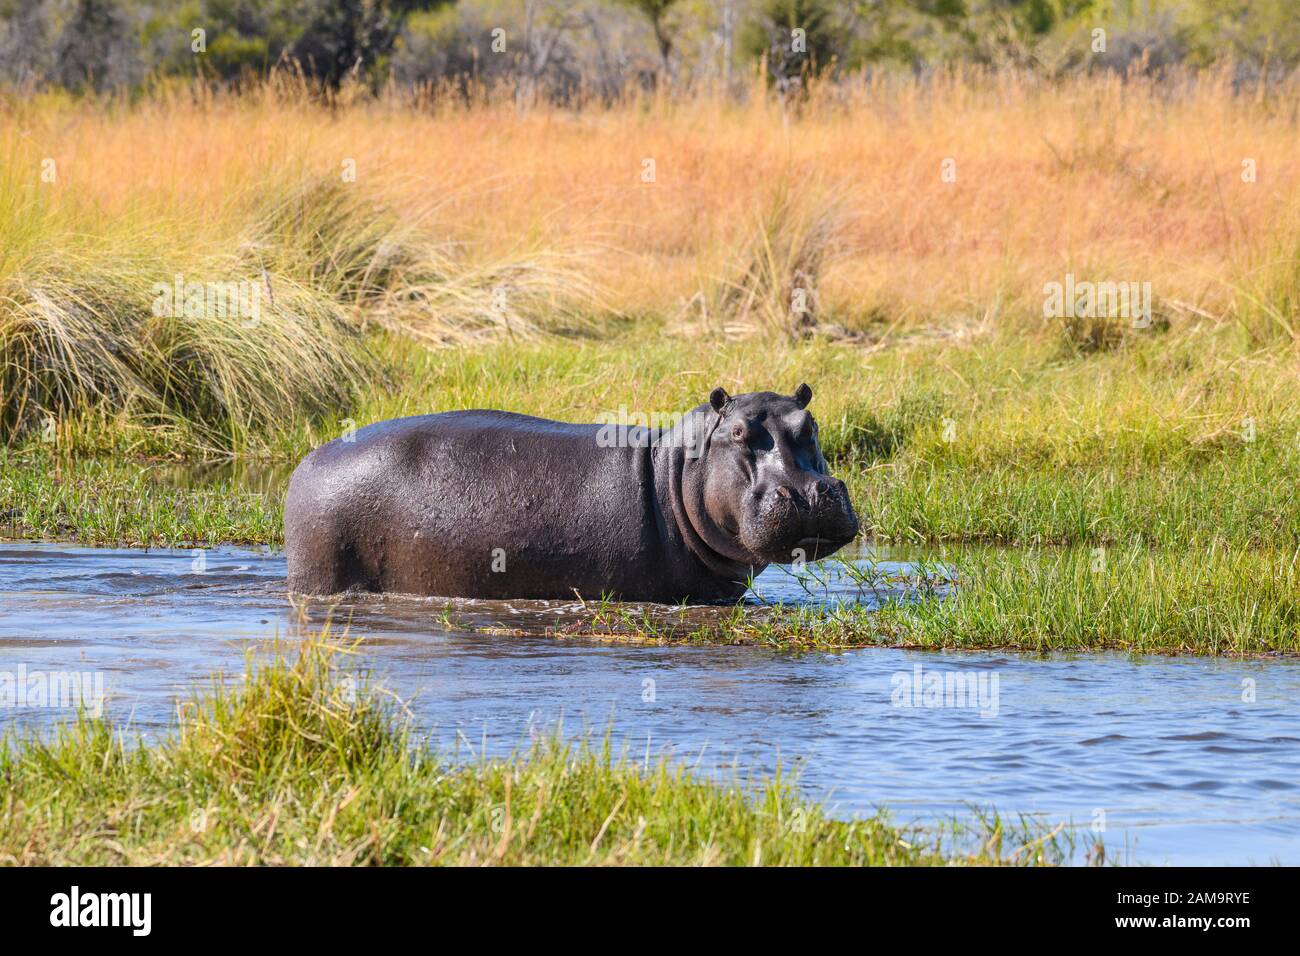 Hippopotamus, Hippopotamus amphibius, Khwai River, Okavango Delta, Botswana Stock Photo